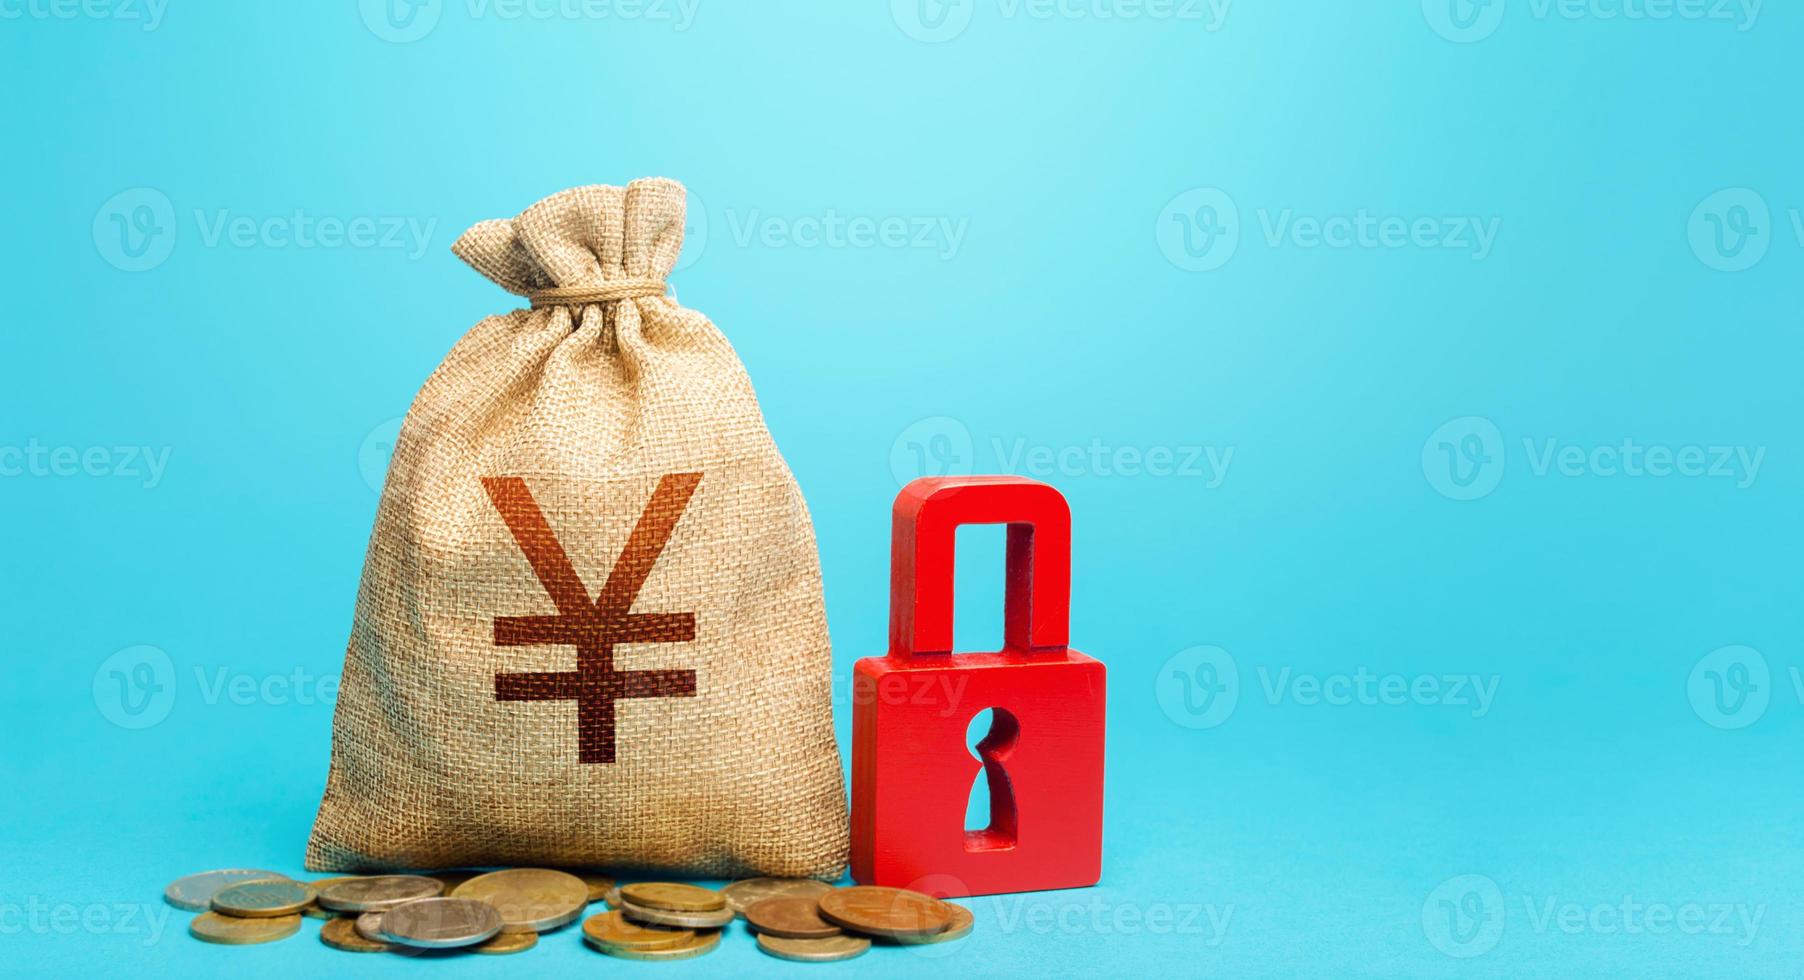 bolsa de dinero yen yuan y candado rojo. bloqueo de cuentas bancarias y embargo de activos. Control estricto del gobierno sobre el sistema financiero. congelamiento de los ahorros previsionales. seguimiento del flujo de caja. foto